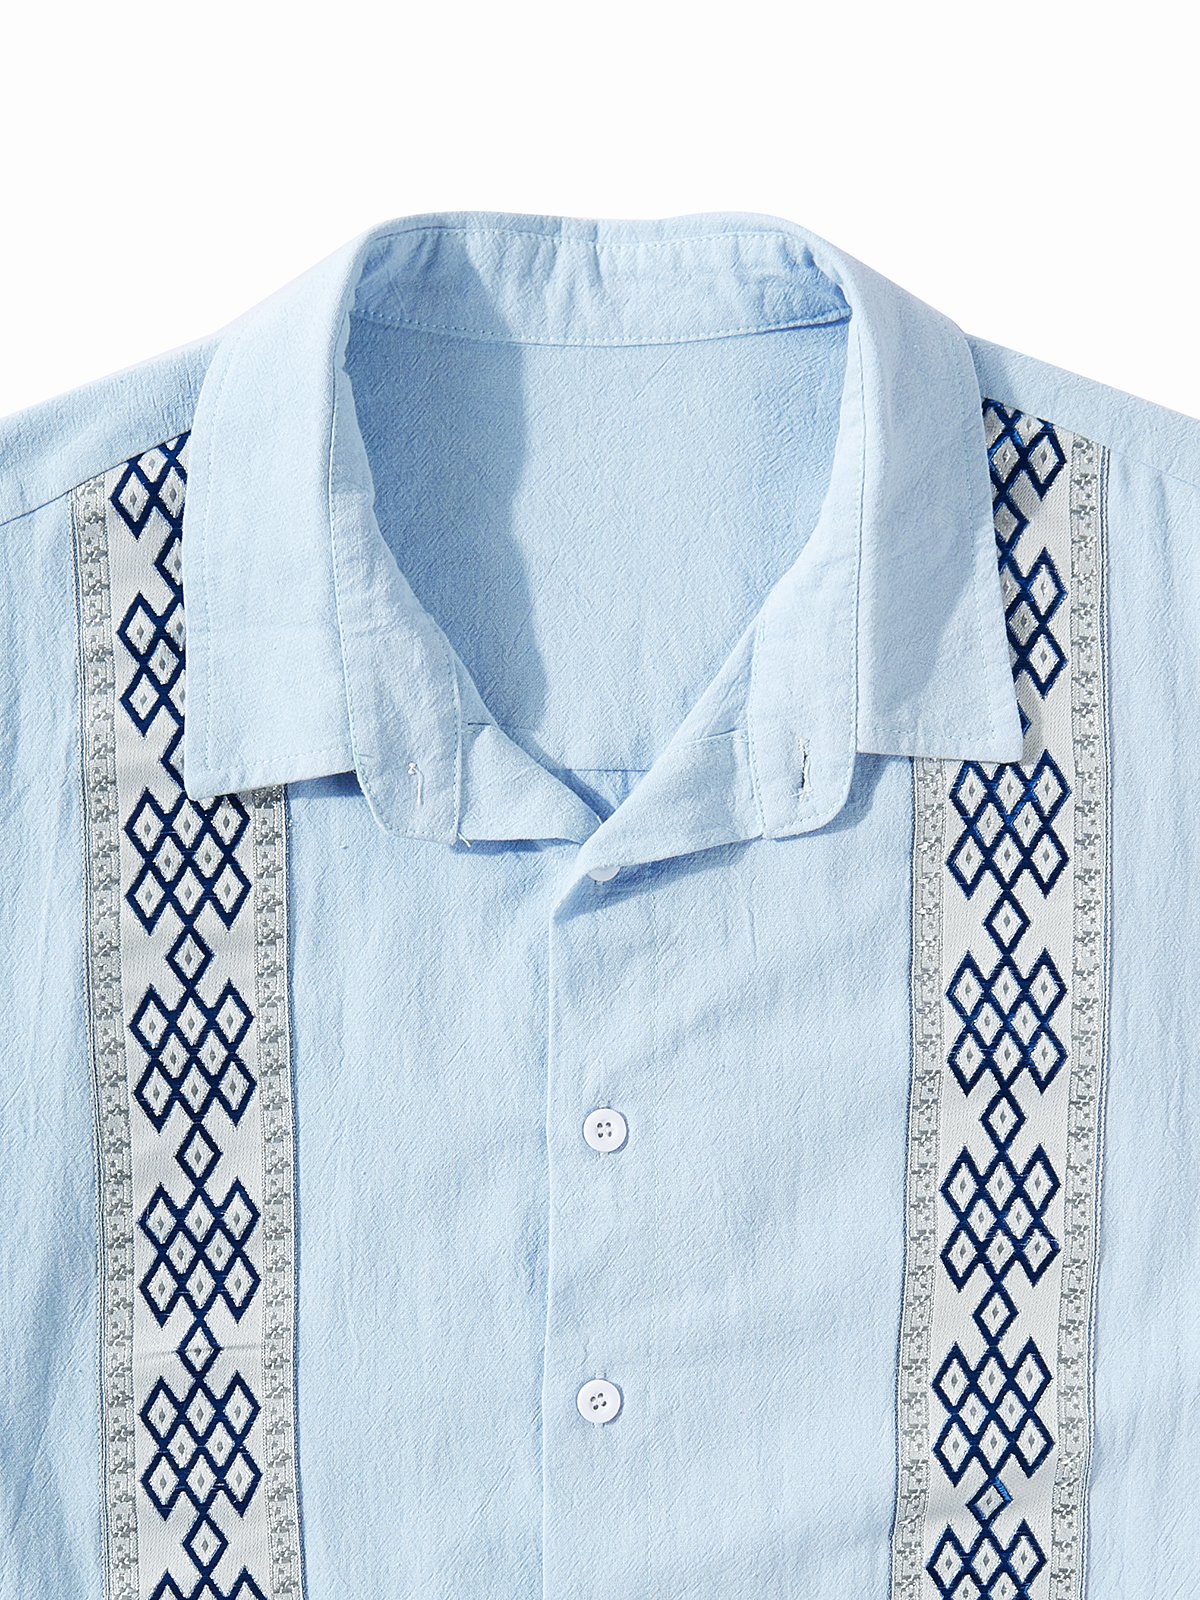 Hardaddy®Cotton Geometric Stripe Short Sleeve Guayabera Shirt